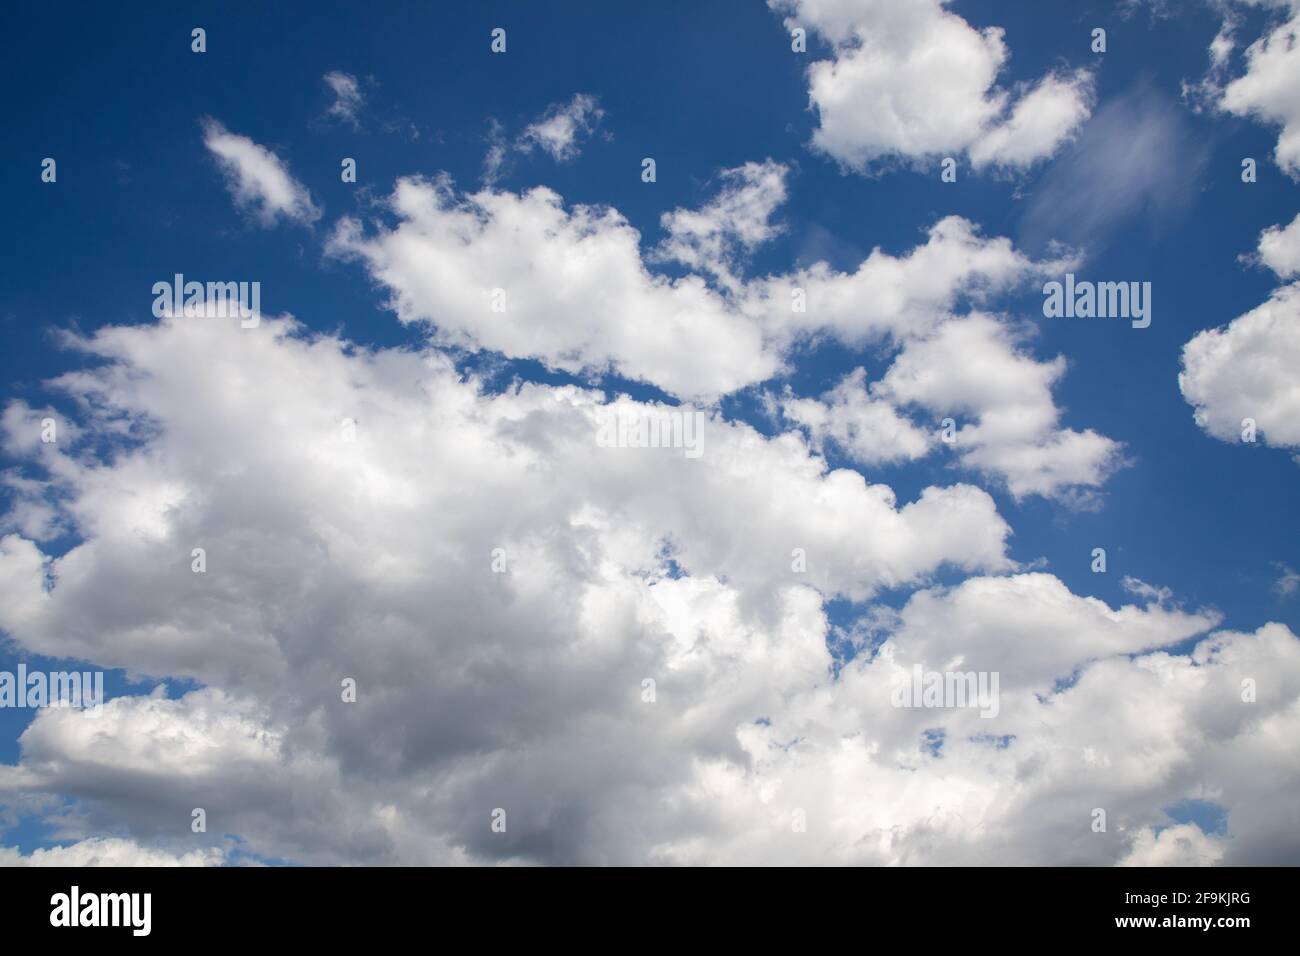 Blu sky with beautiful cumulus clouds Stock Photo